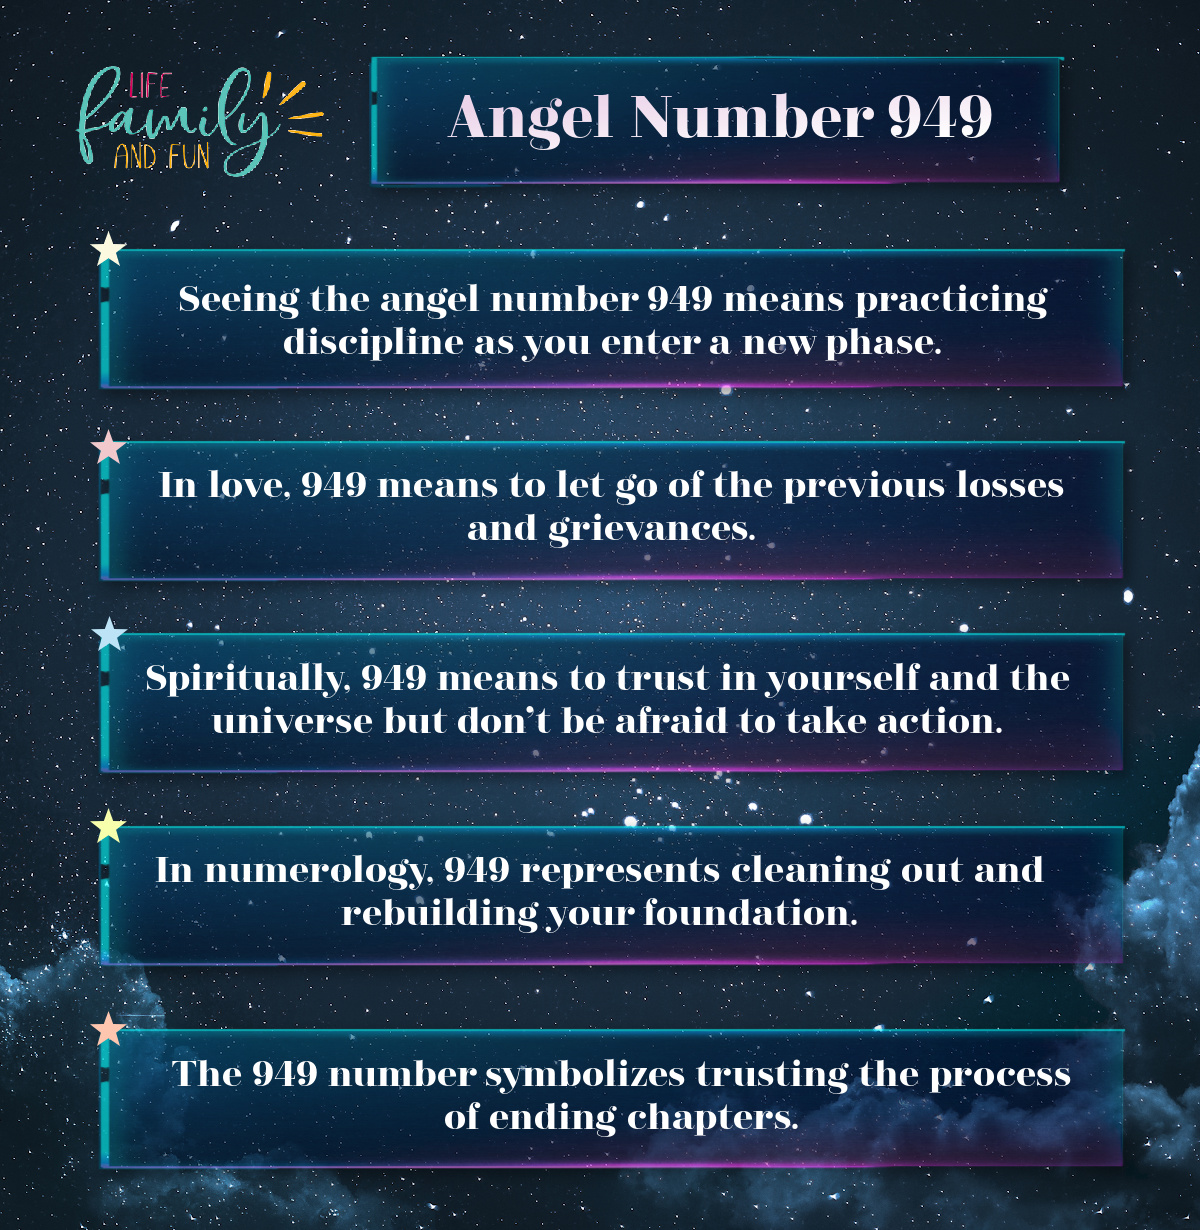 Angel Number 949